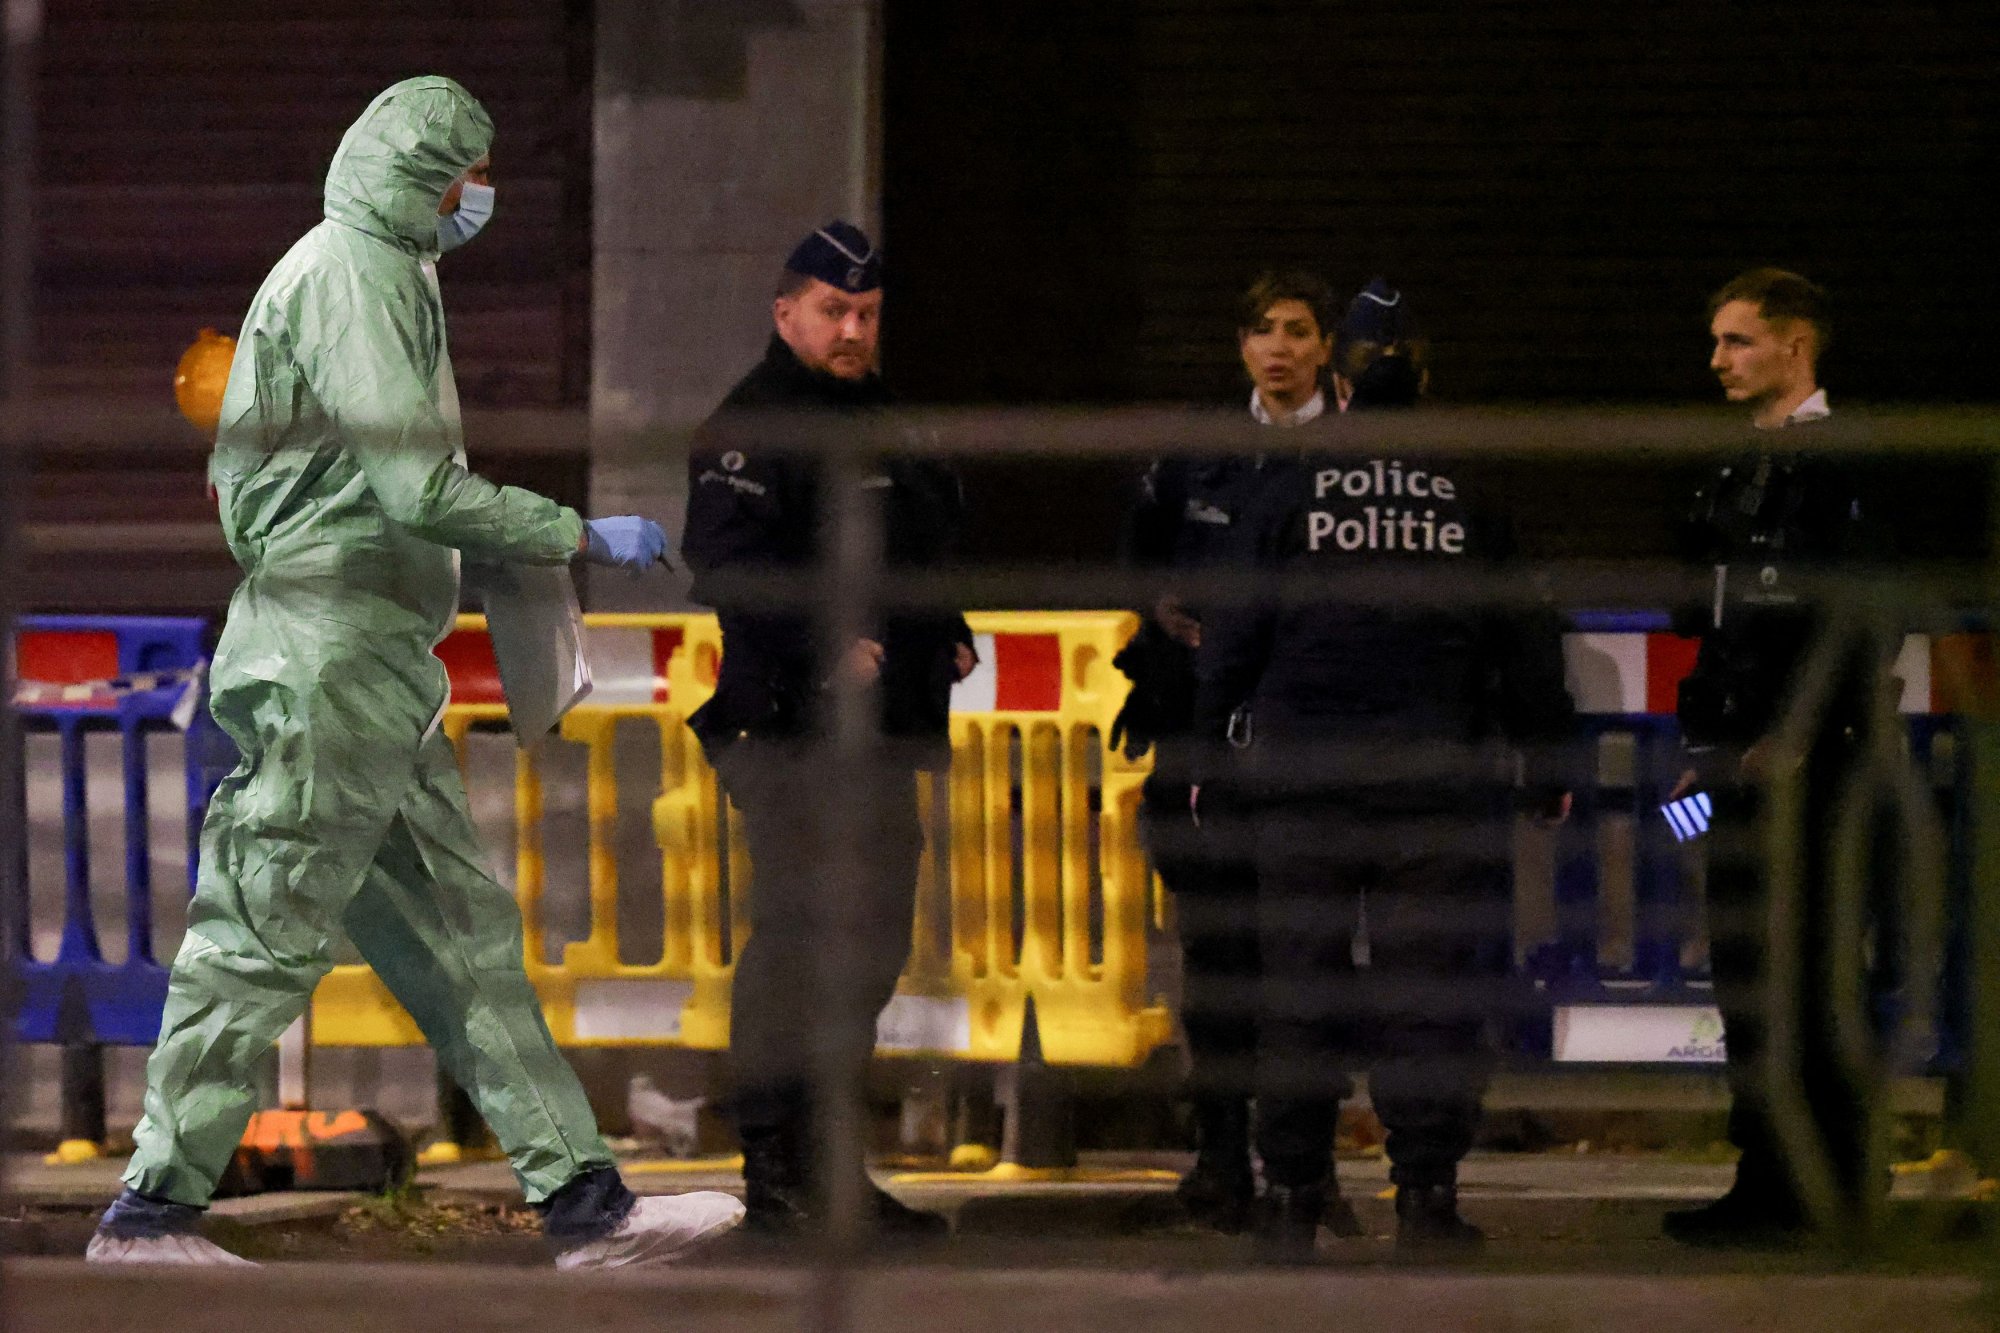 Βέλγιο: Πυροβολισμοί στις Βρυξέλλες - Τρεις οι τραυματίες σε αριστοκρατική περιοχή